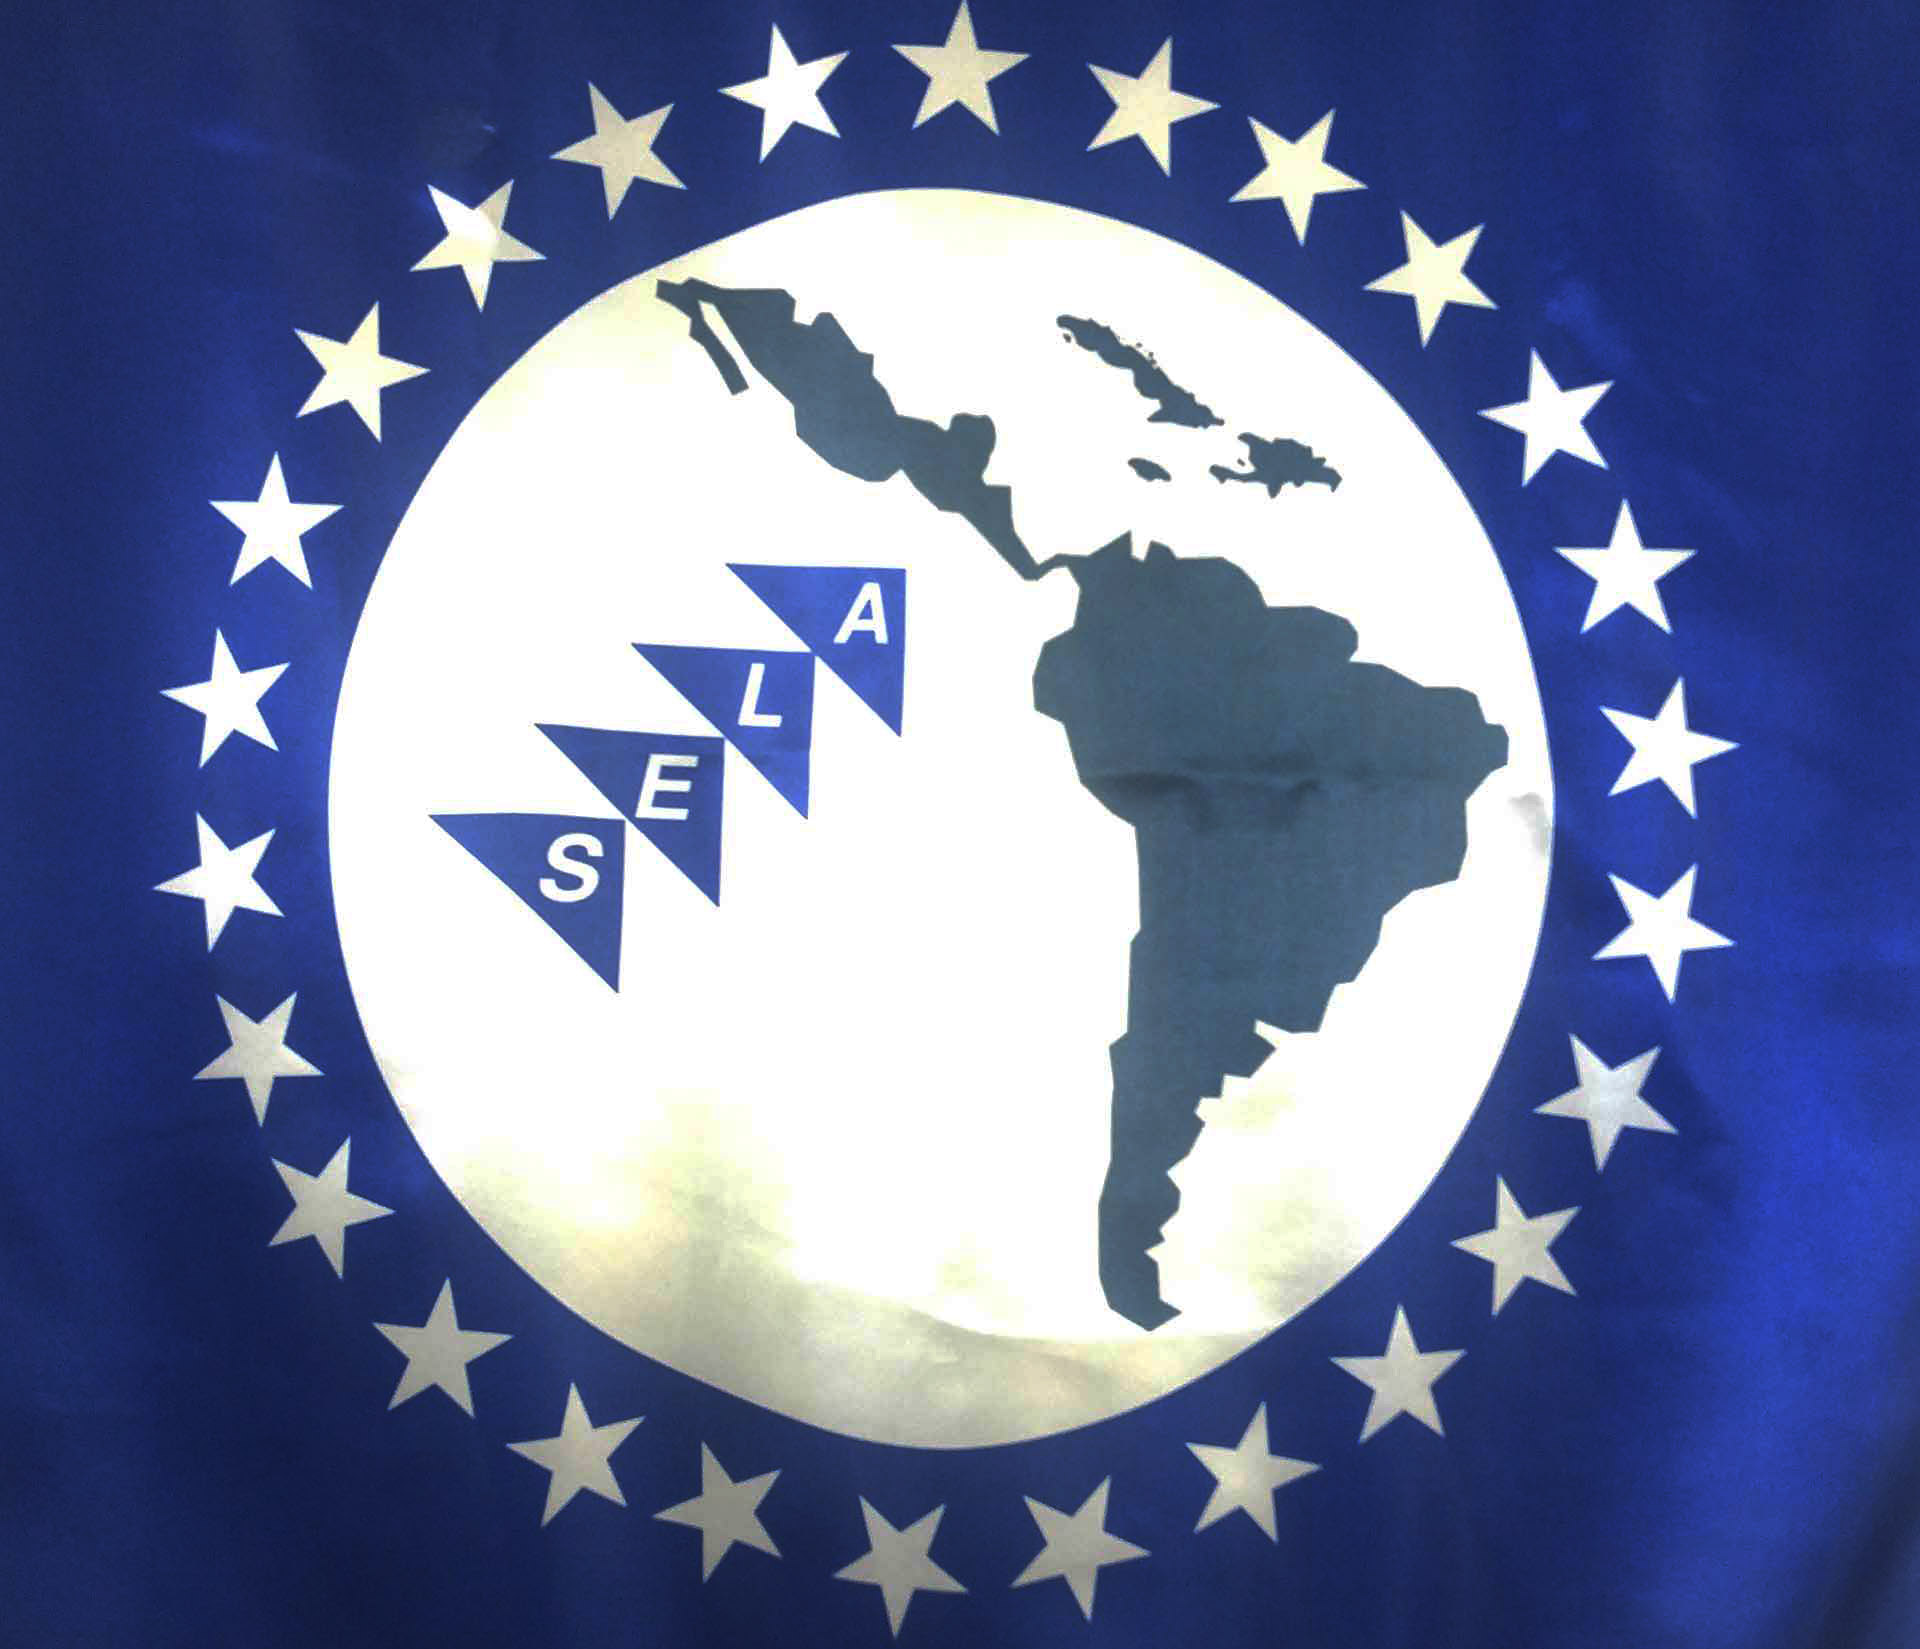 XLV Reunión Ordinaria del Consejo Latinoamericano